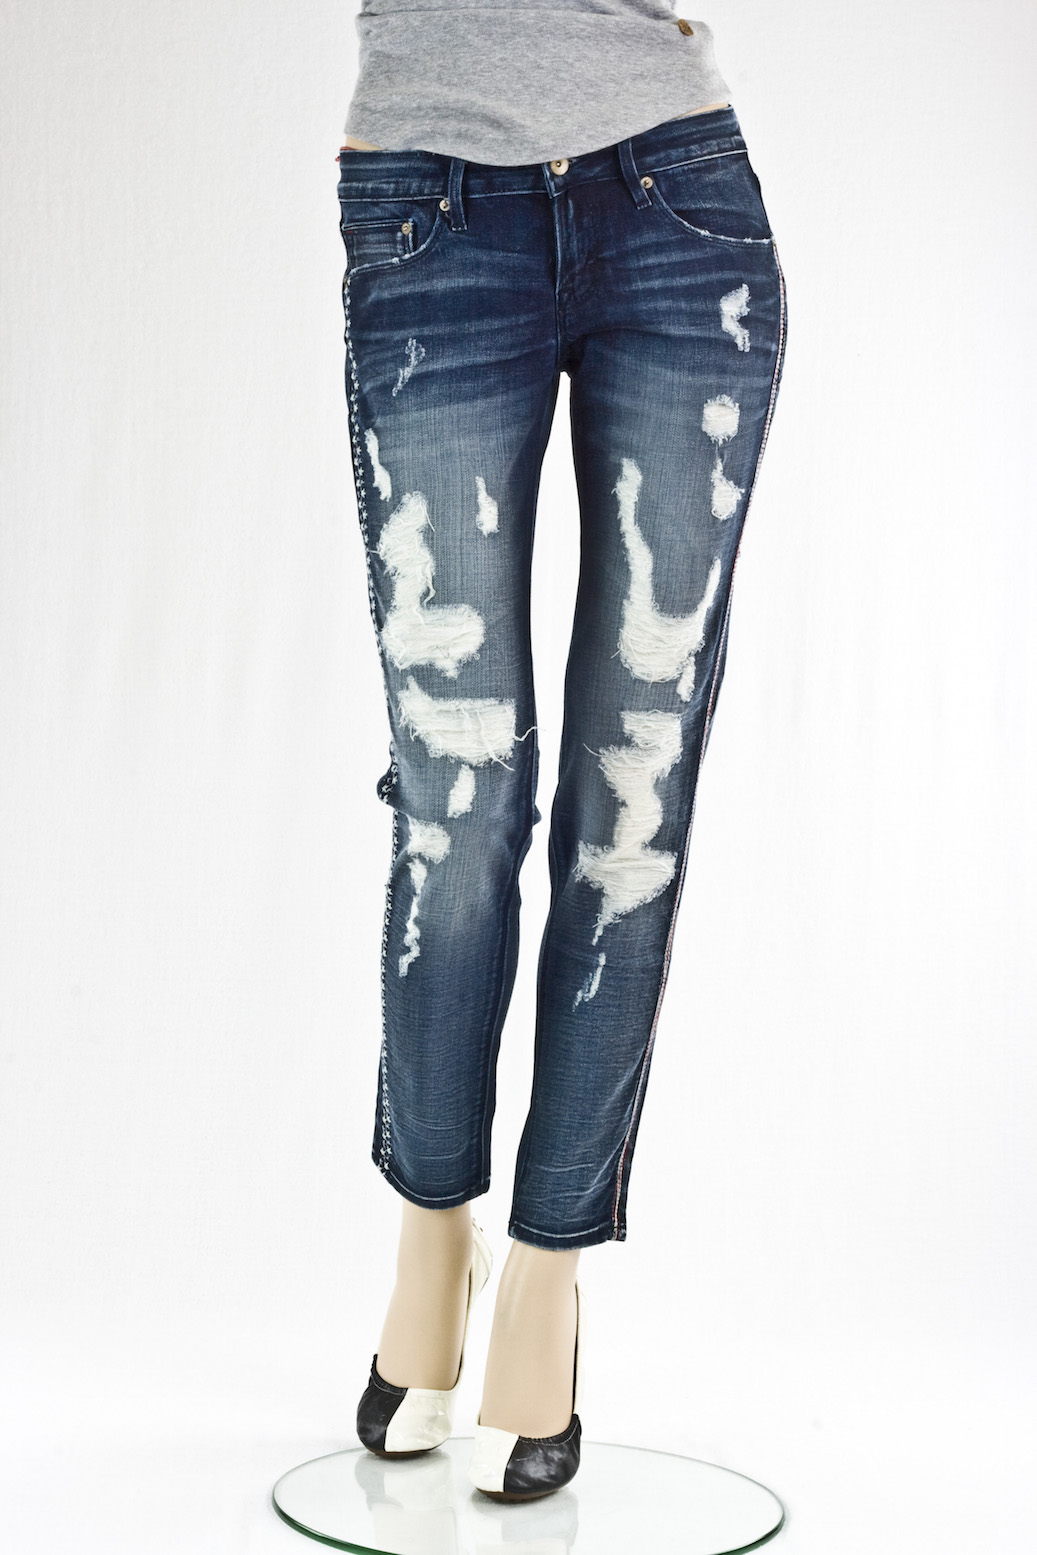 джинсы женские Cult of individuality винтажные "Скини" Hitcher destroyed jeans